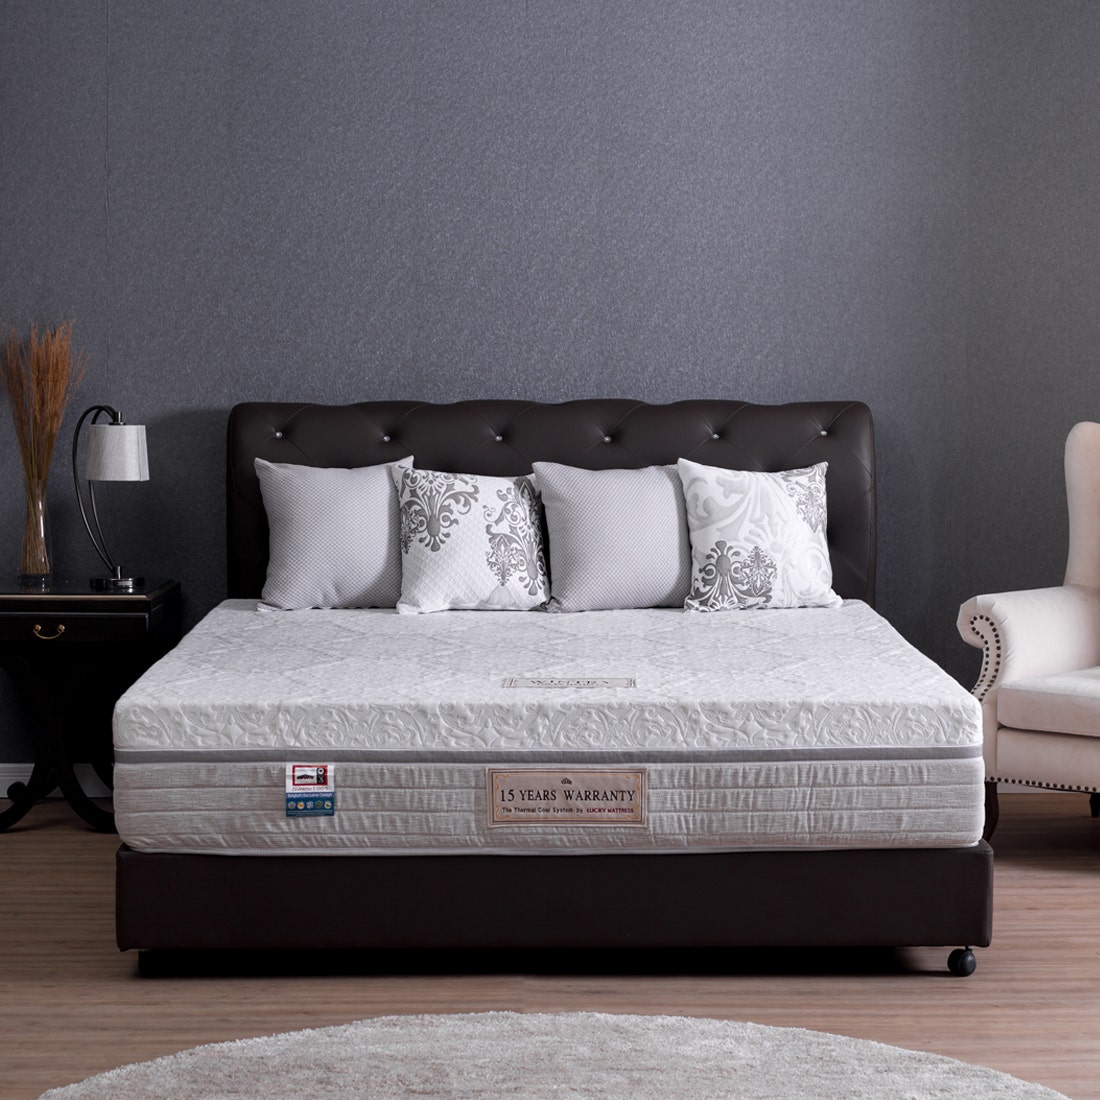 39006612-mattress-bedding-mattresses-pocket-spring-mattress-31